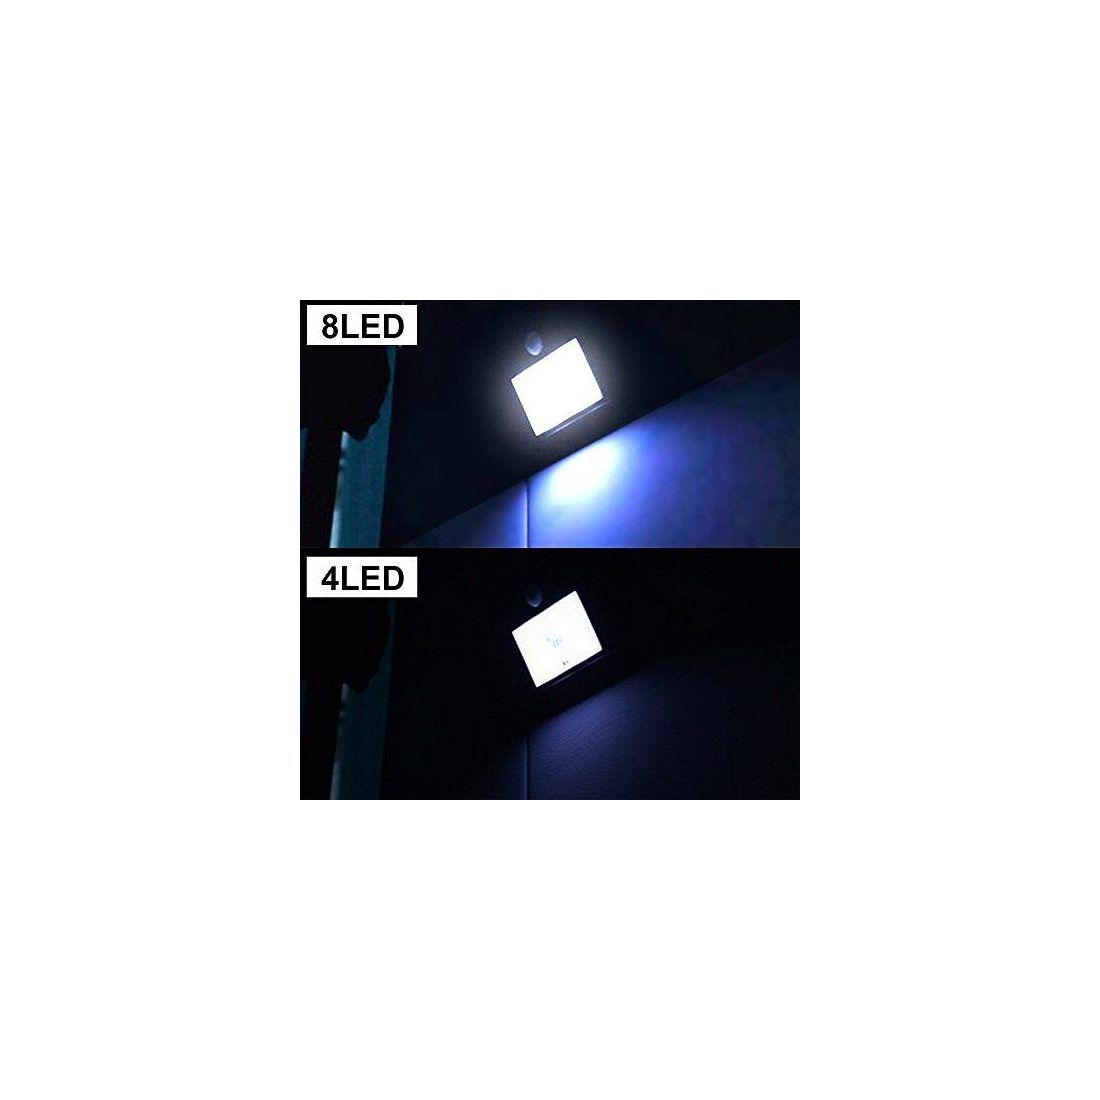 8 LED eclairage exterieur imperméable, Mpow eclairage terrasse Sans Fil Détecteur de Mouvement avec Trois Modes Intelligents 